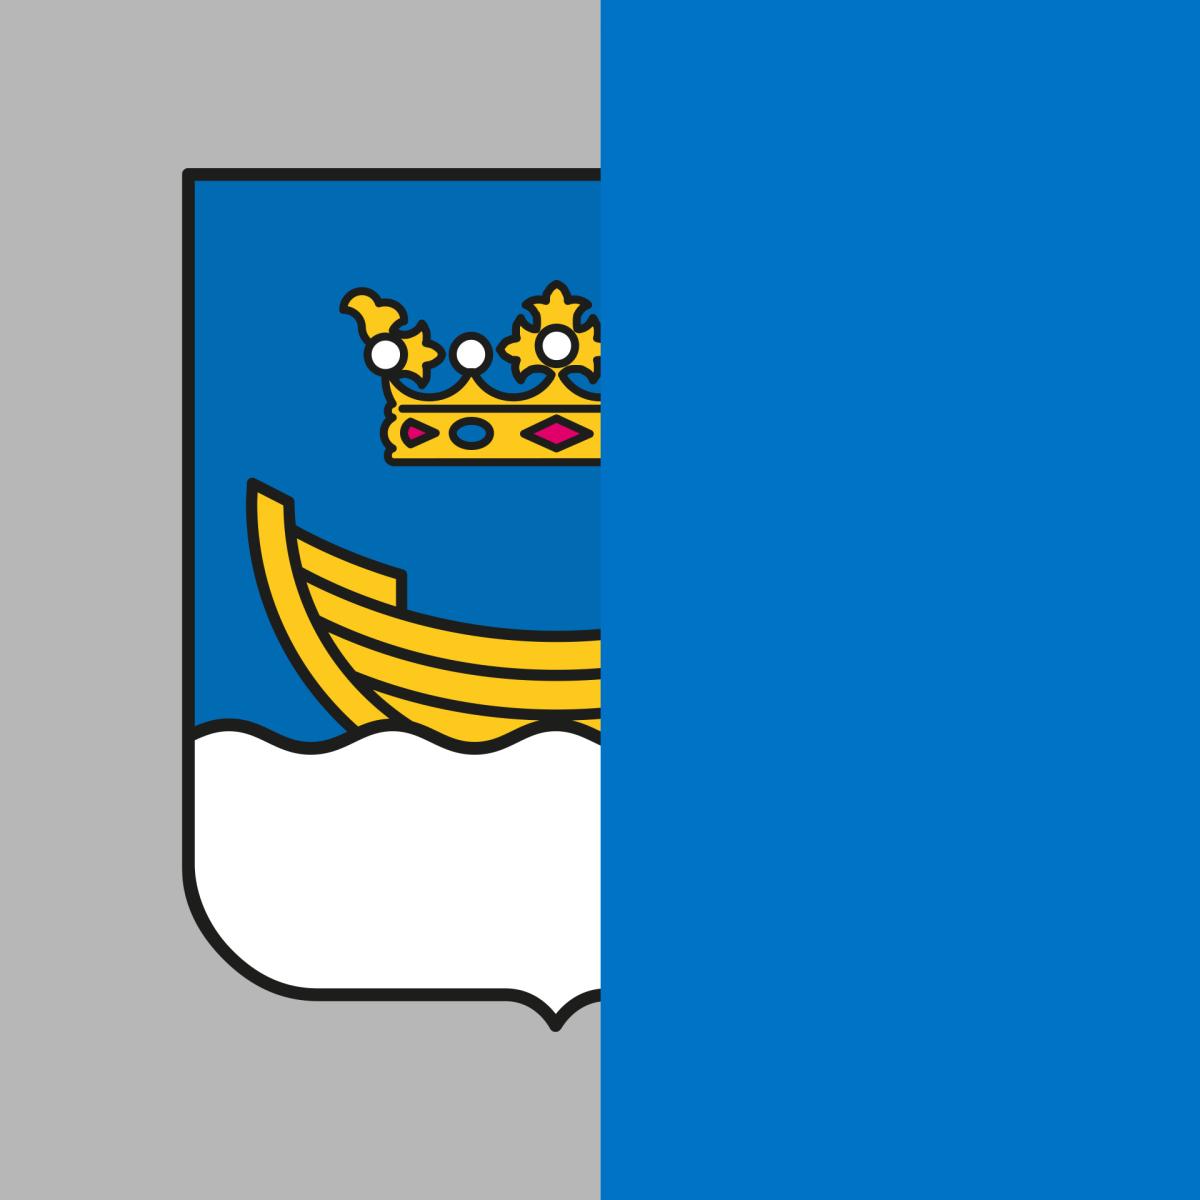 Helsingin sininen vaakuna puolikkaana. Vaakunassa kruunu ja sen alla vene ja vesielementti.